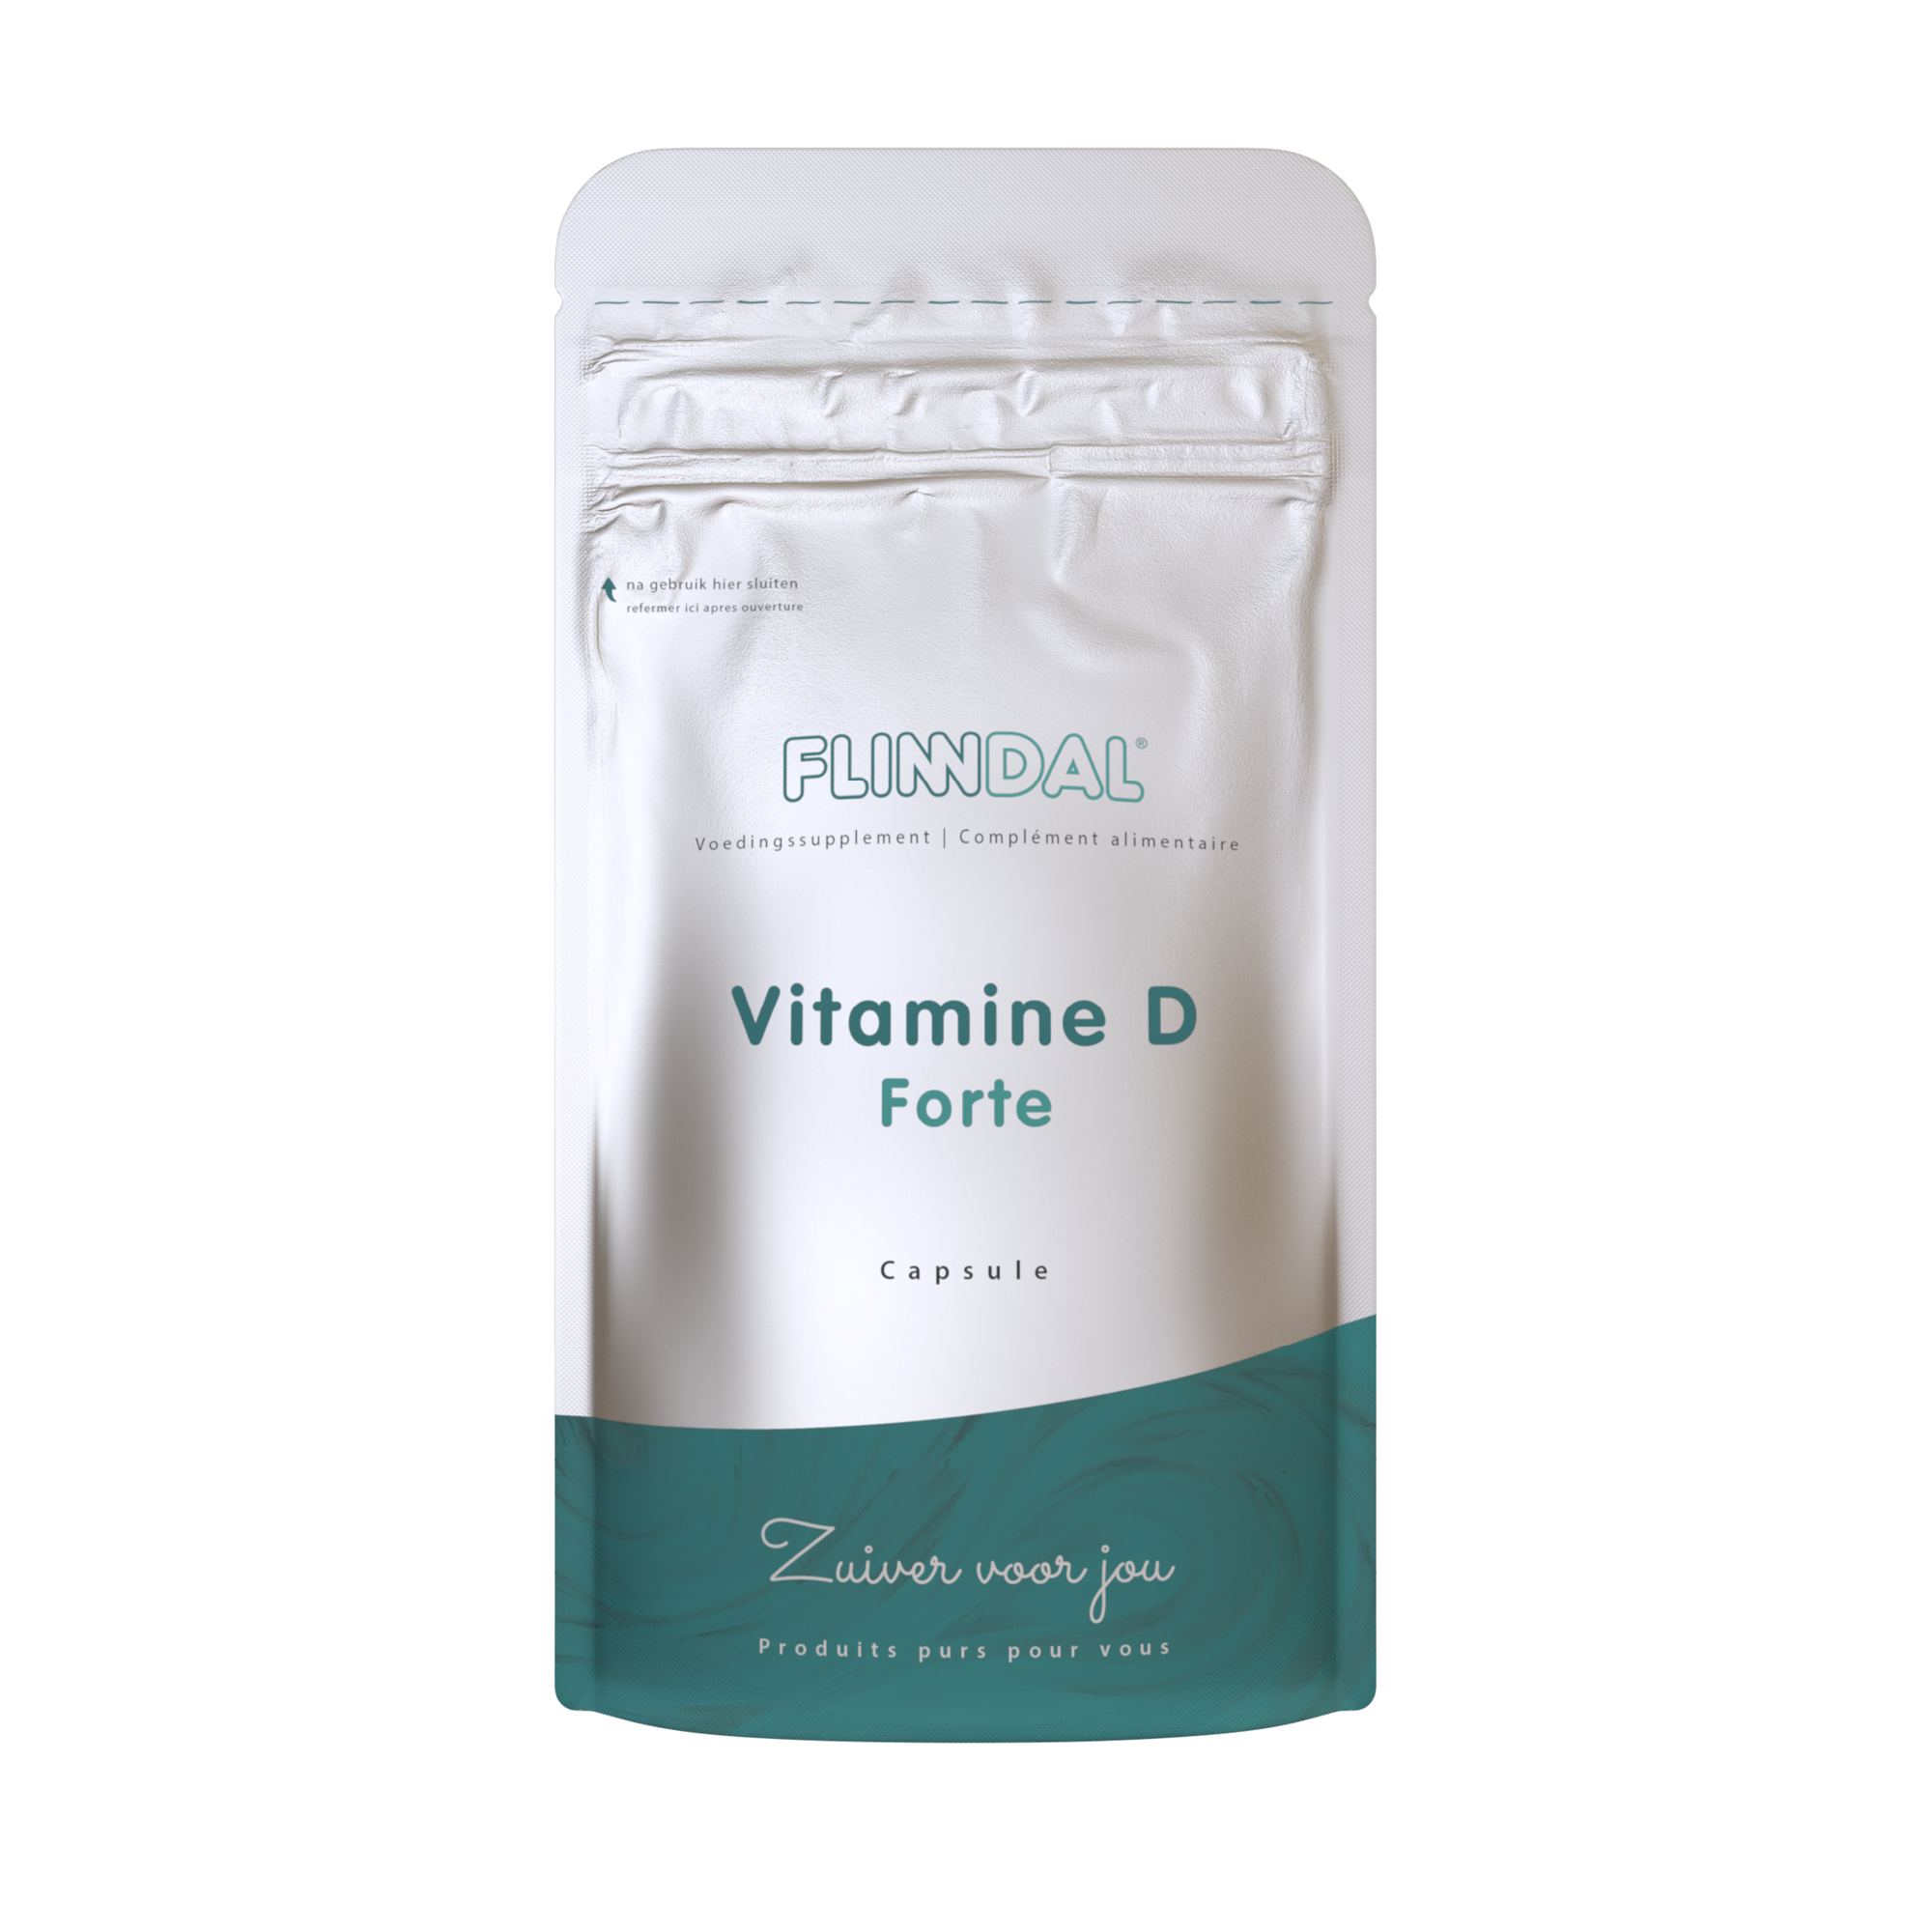 pint smaak stikstof Vitamine D Forte bestellen? Capsule met 20 mcg Vit. D3